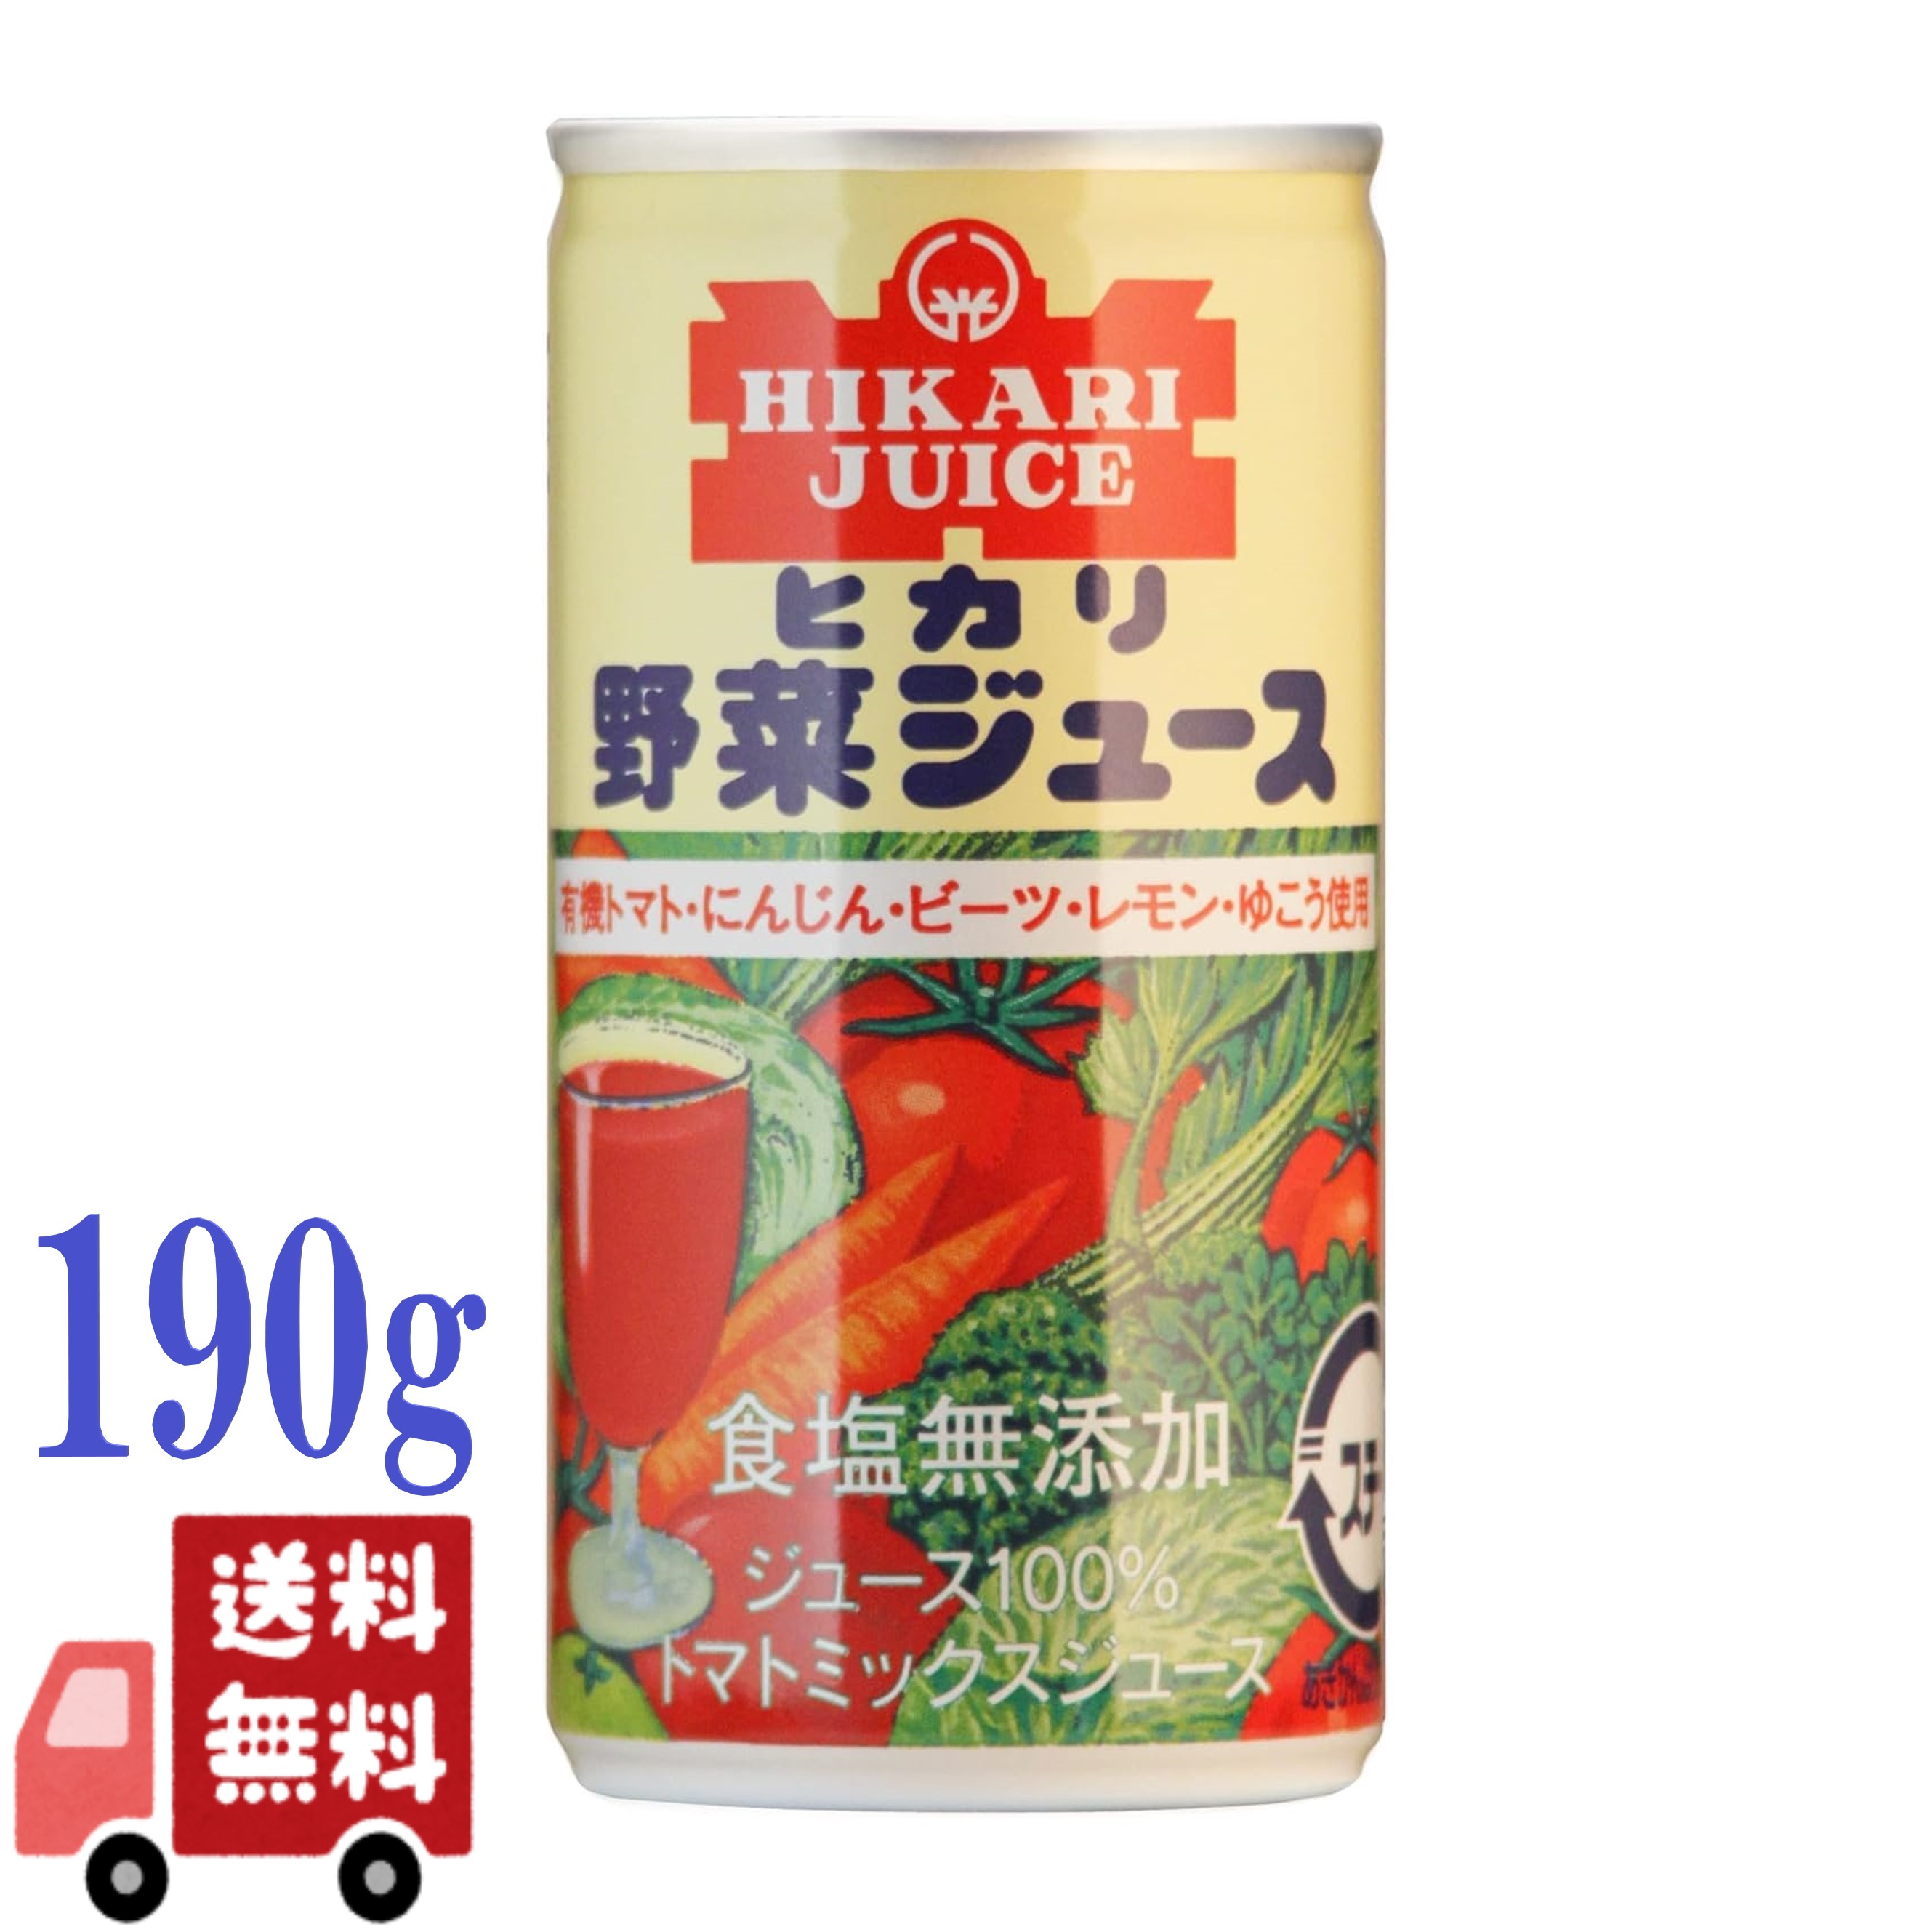 ヒカリ 有機 無塩 野菜ジュース 190g 光食品 オーガニック ミックスジュース トマトジュース 香料 保存料 着色料 酸味料不使用